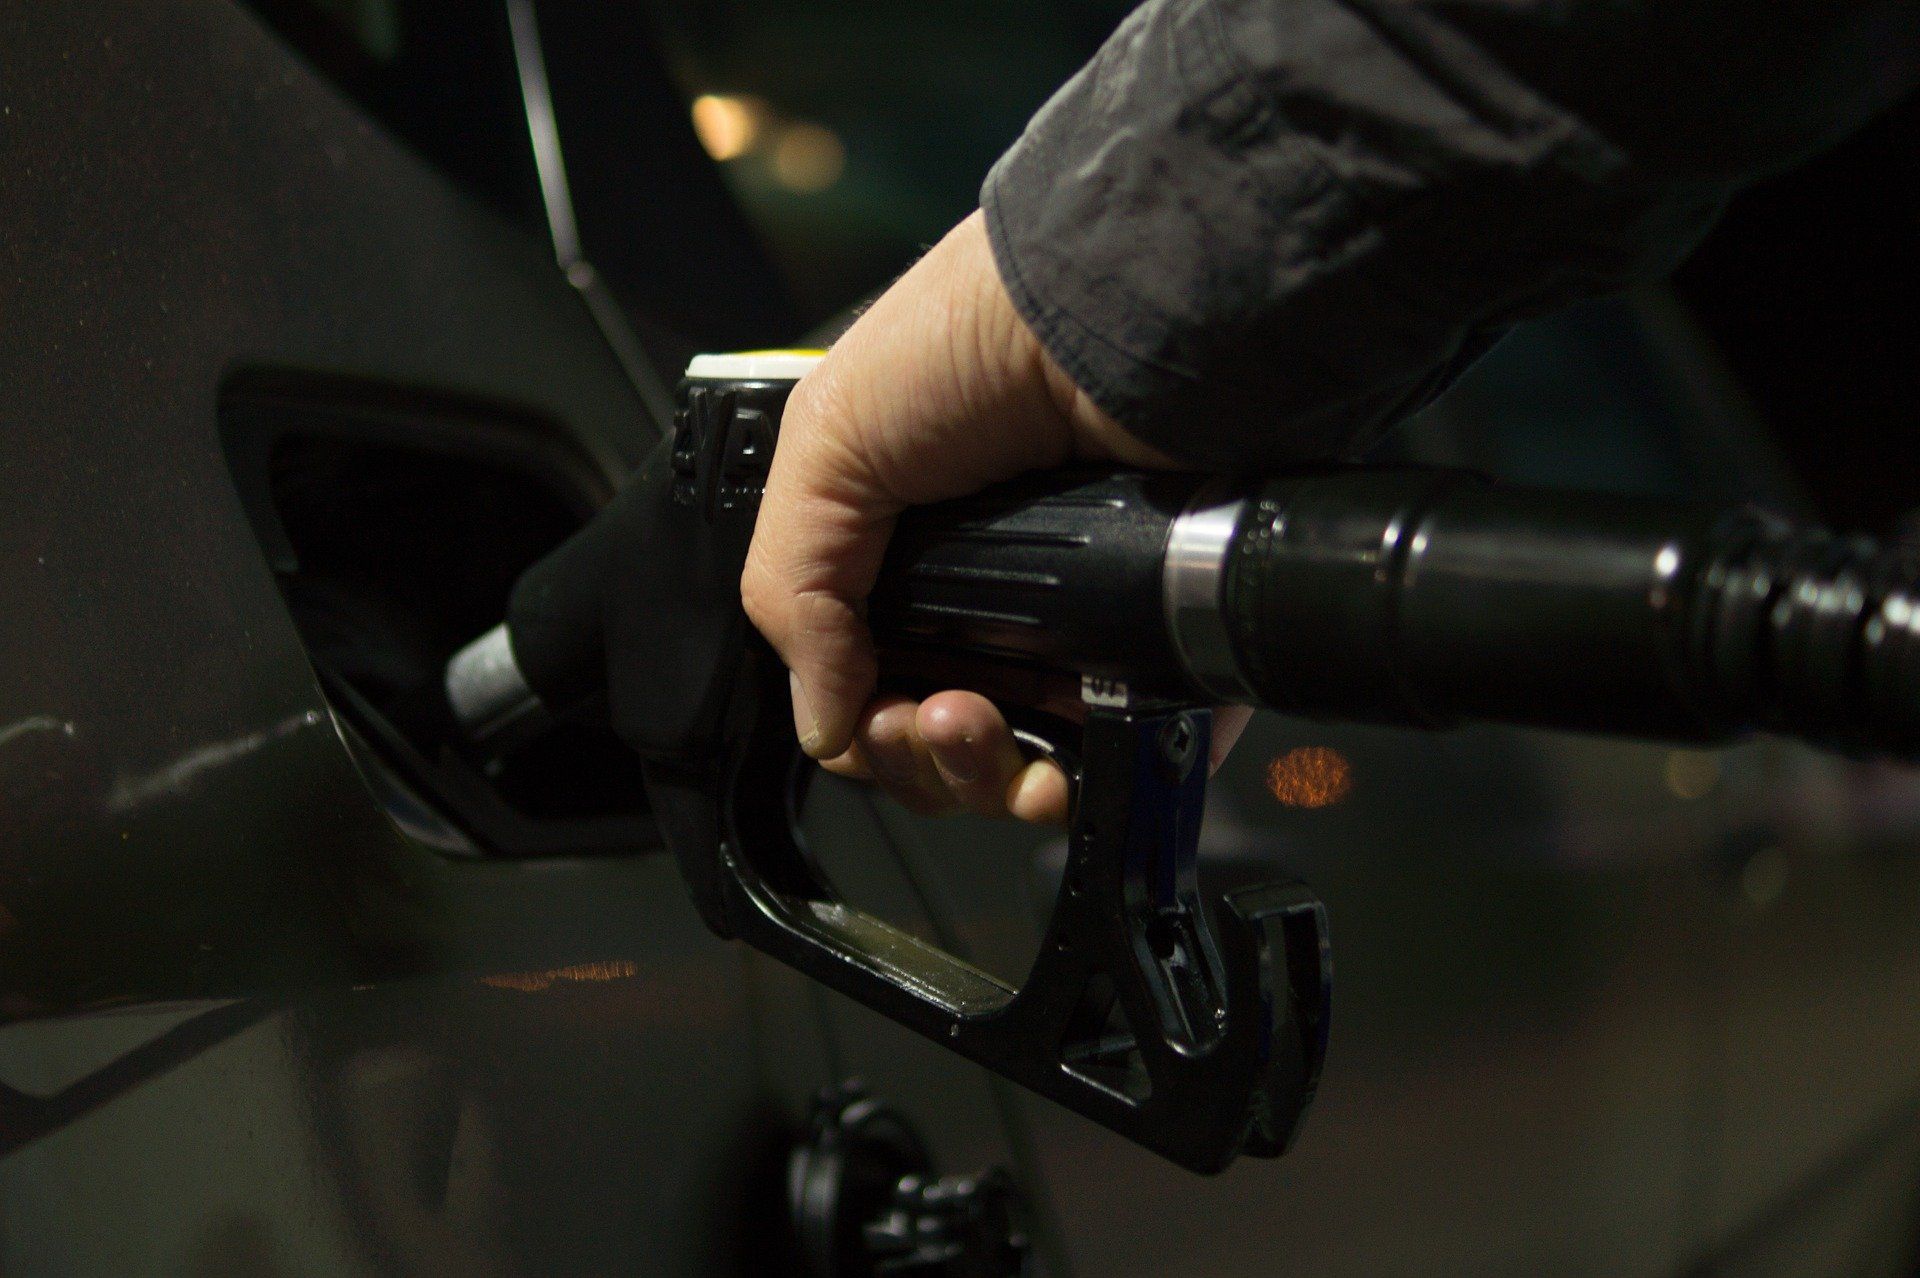 Fuel price June 15, 2022: Petrol Rs 96.72, diesel Rs 89.62 in Delhi